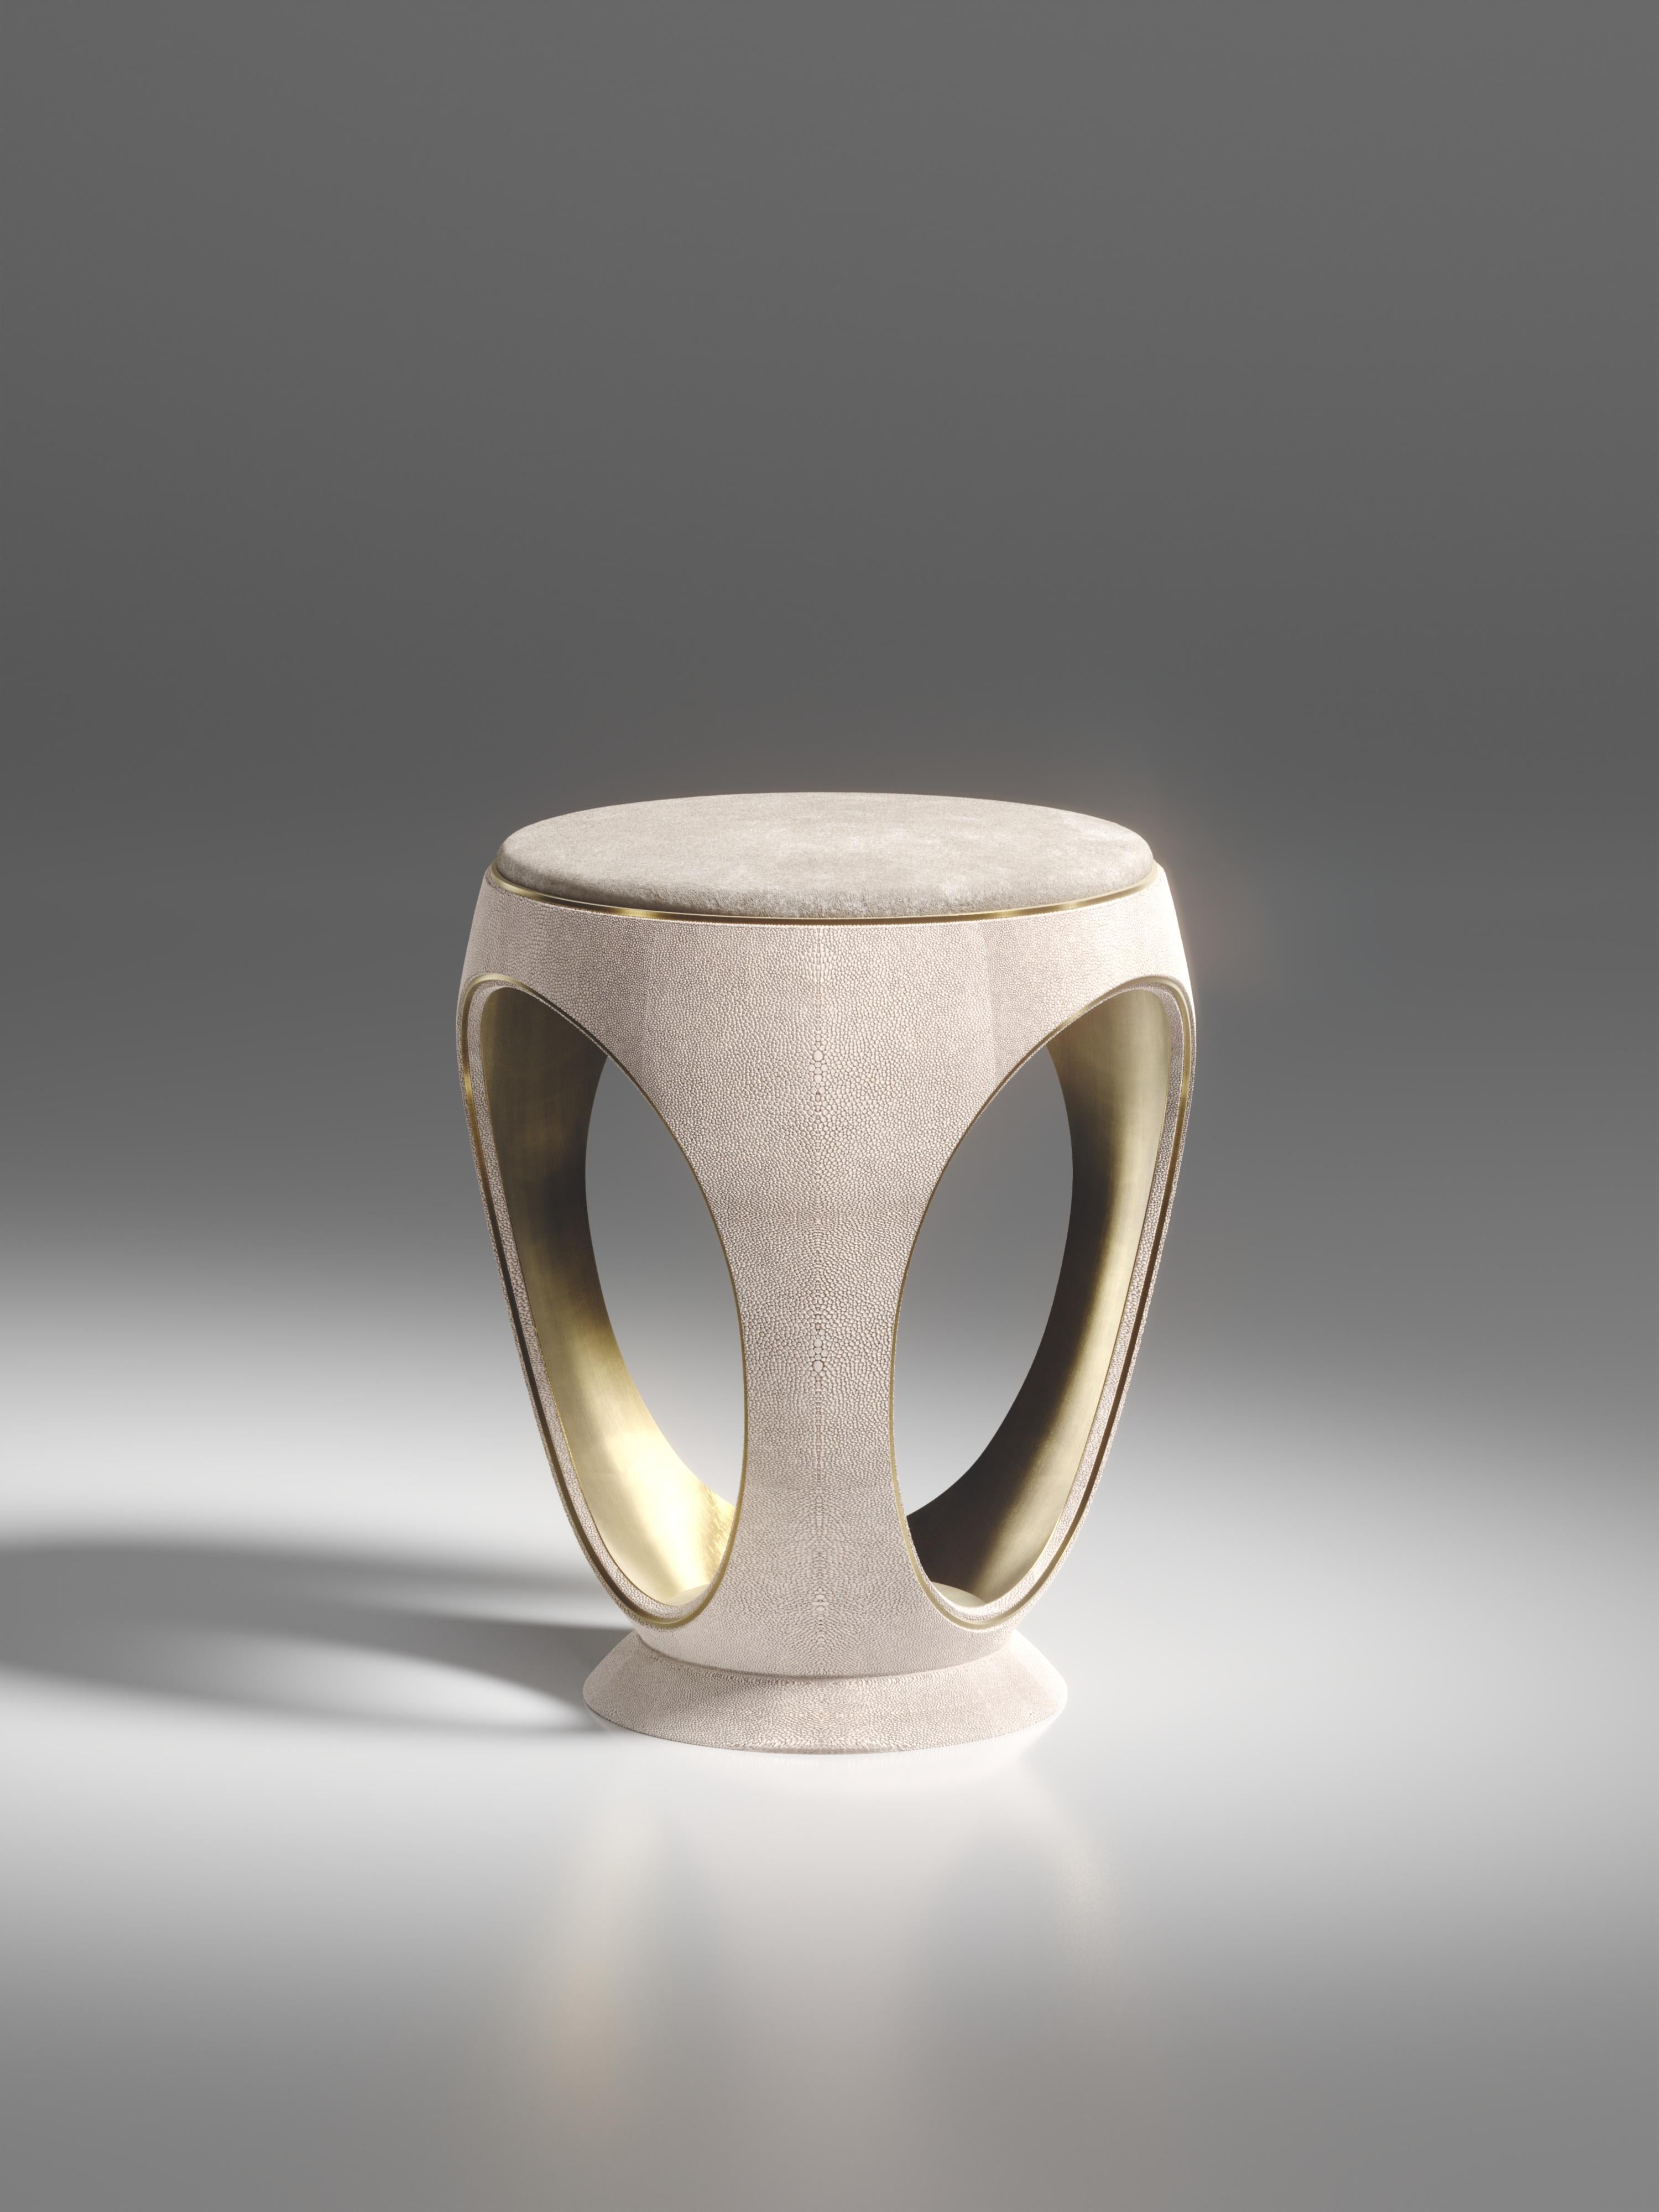 Le tabouret annulaire en galuchat crème est l'une des pièces les plus emblématiques de la Collection R&Y Augousti. De forme sculpturale, semblable à un bijou, cette pièce a été relookée avec un discret détail d'indentation en laiton patiné bronze à